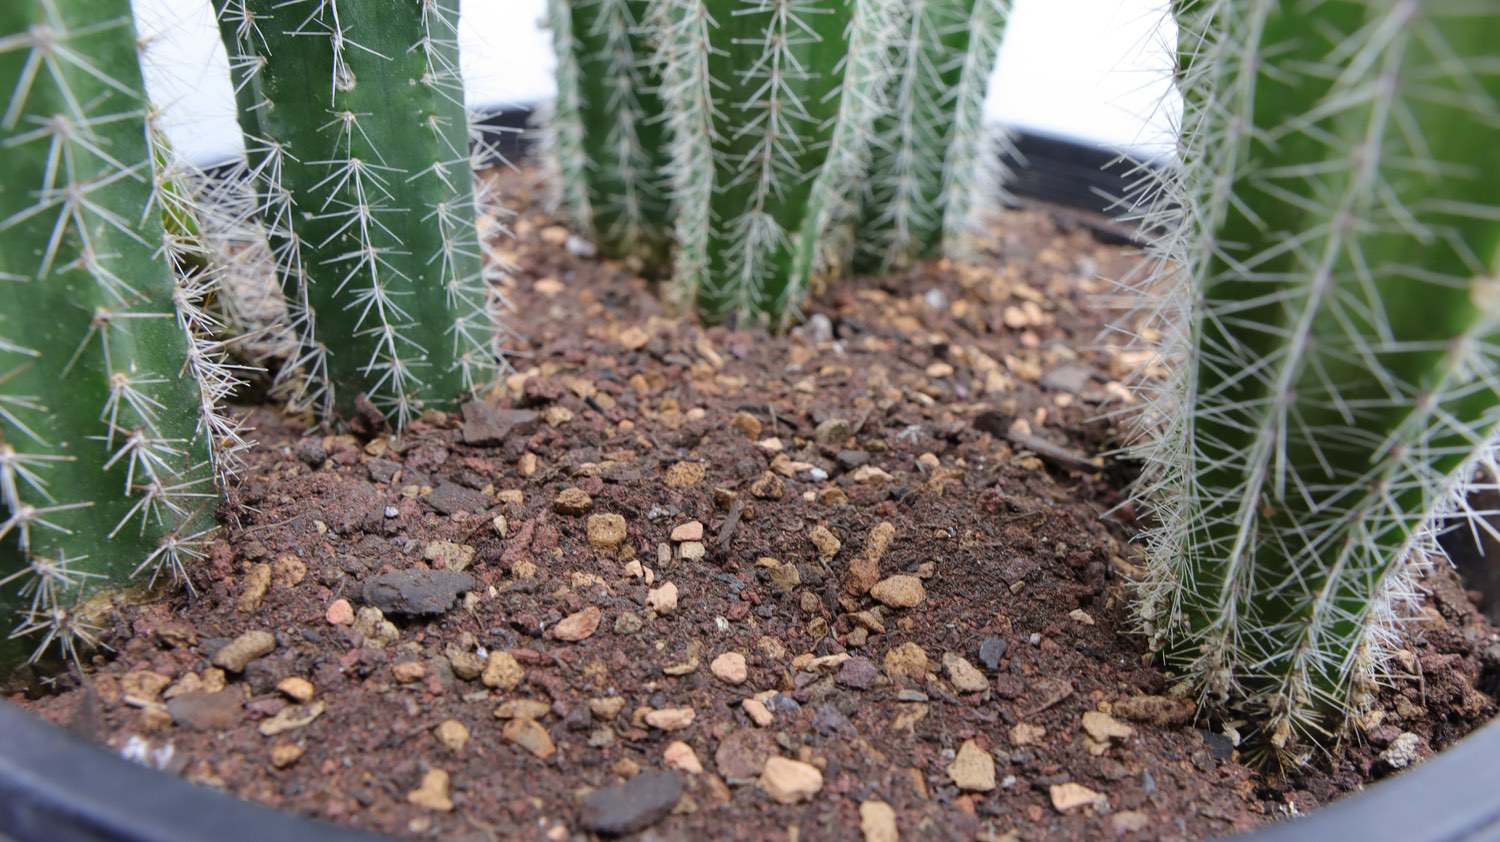 cactus soil mix recipe